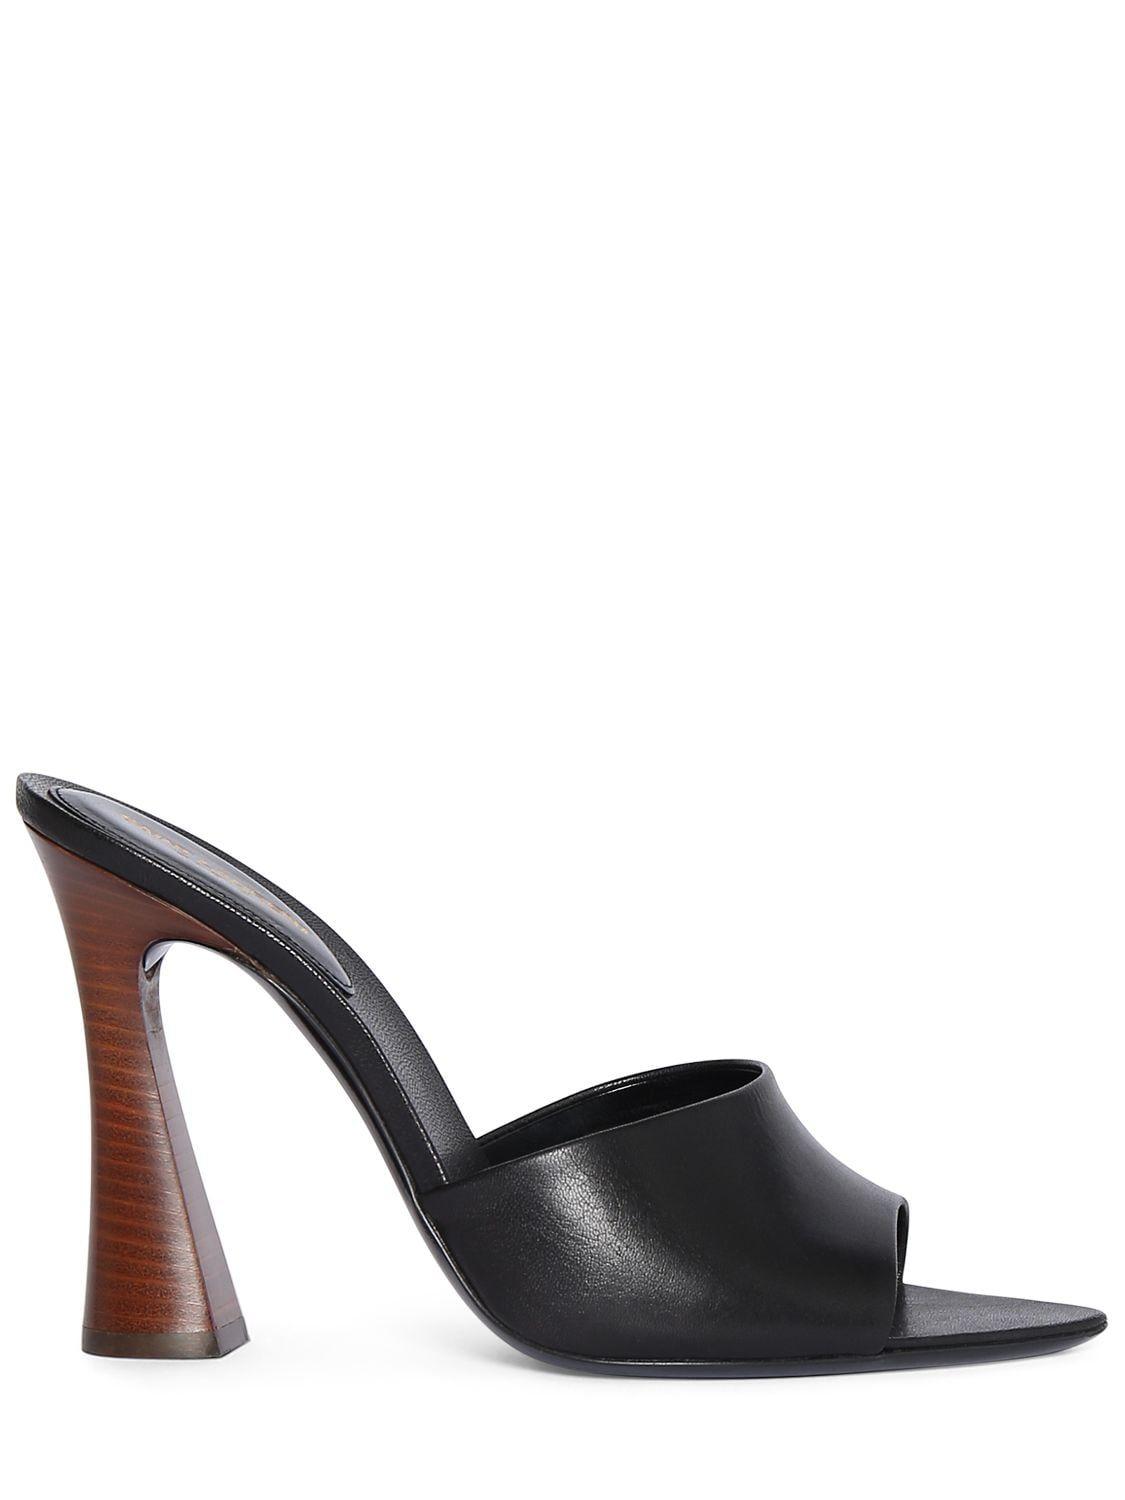 Saint Laurent 105mm Suite Leather Mule Sandals in Black | Lyst